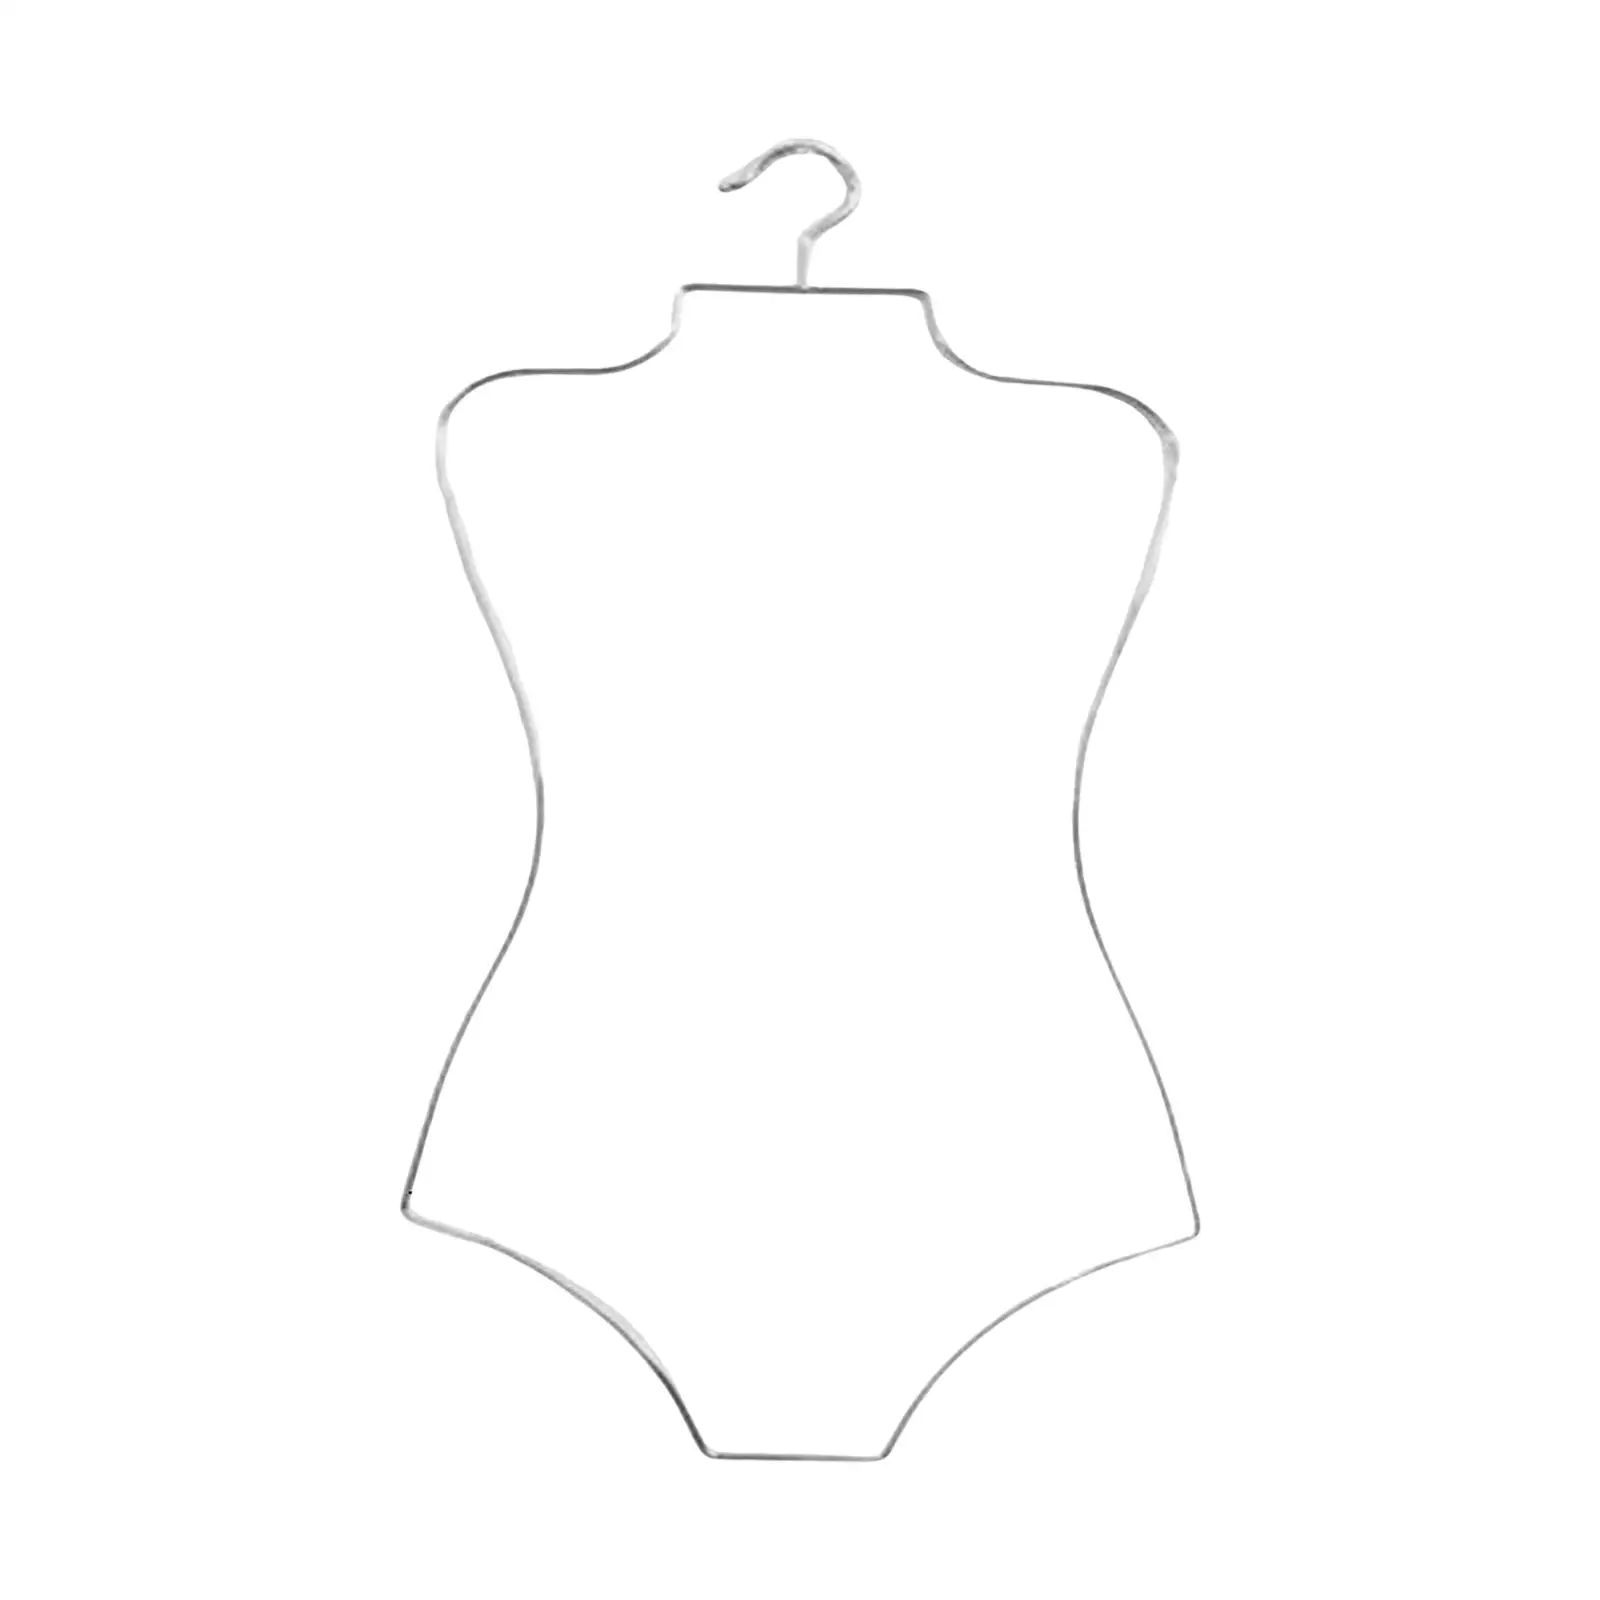 Hanger Lingerie Hanger Swimsuit Hanger for Kids Girls Beachwear